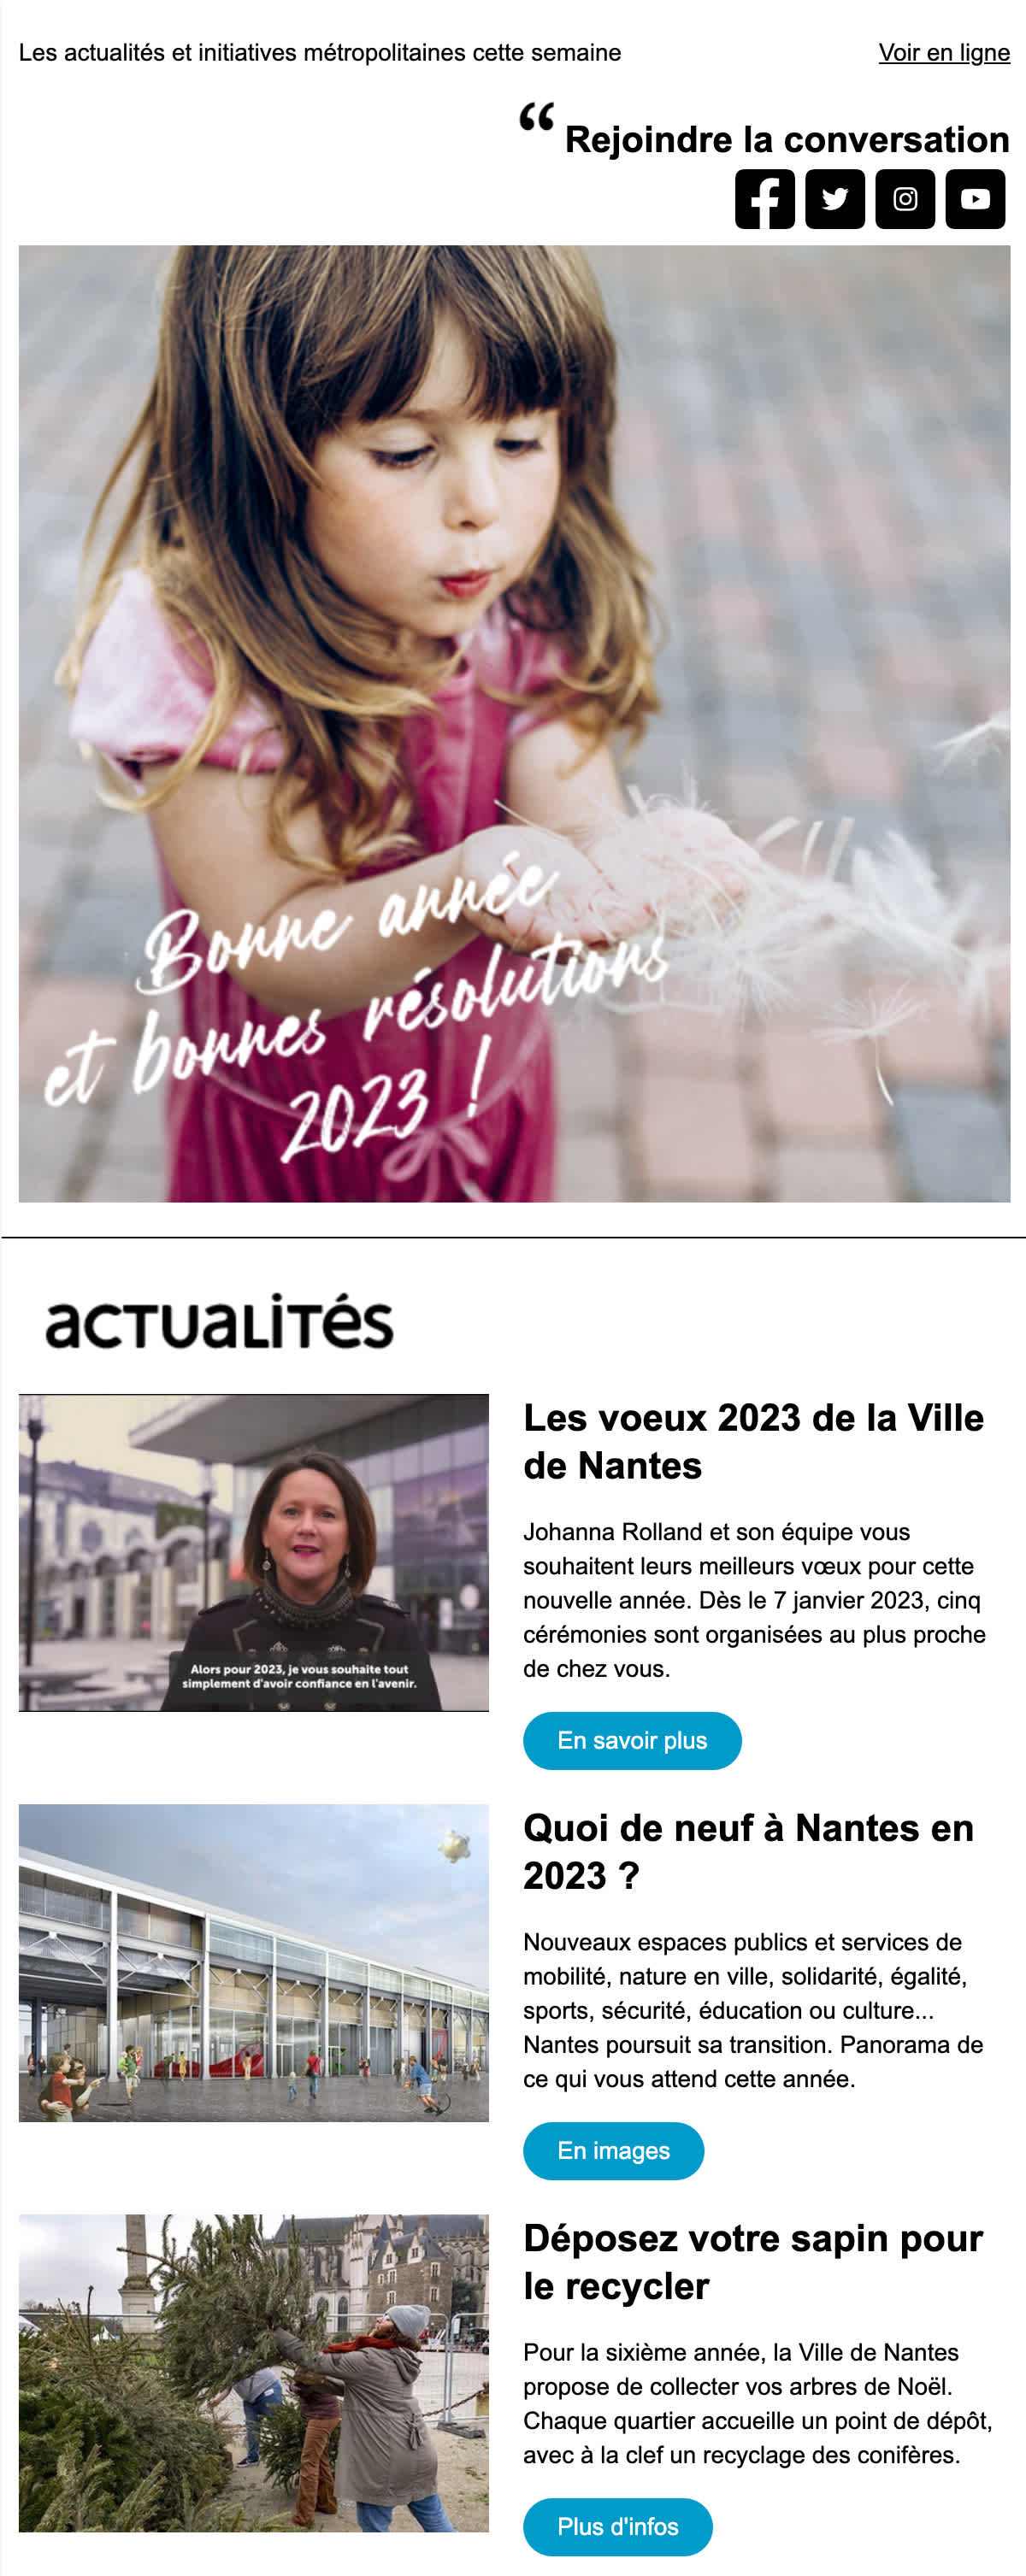 Capture d’écran de l’email de vœux de bonne année 2023 envoyé par la ville de Nantes